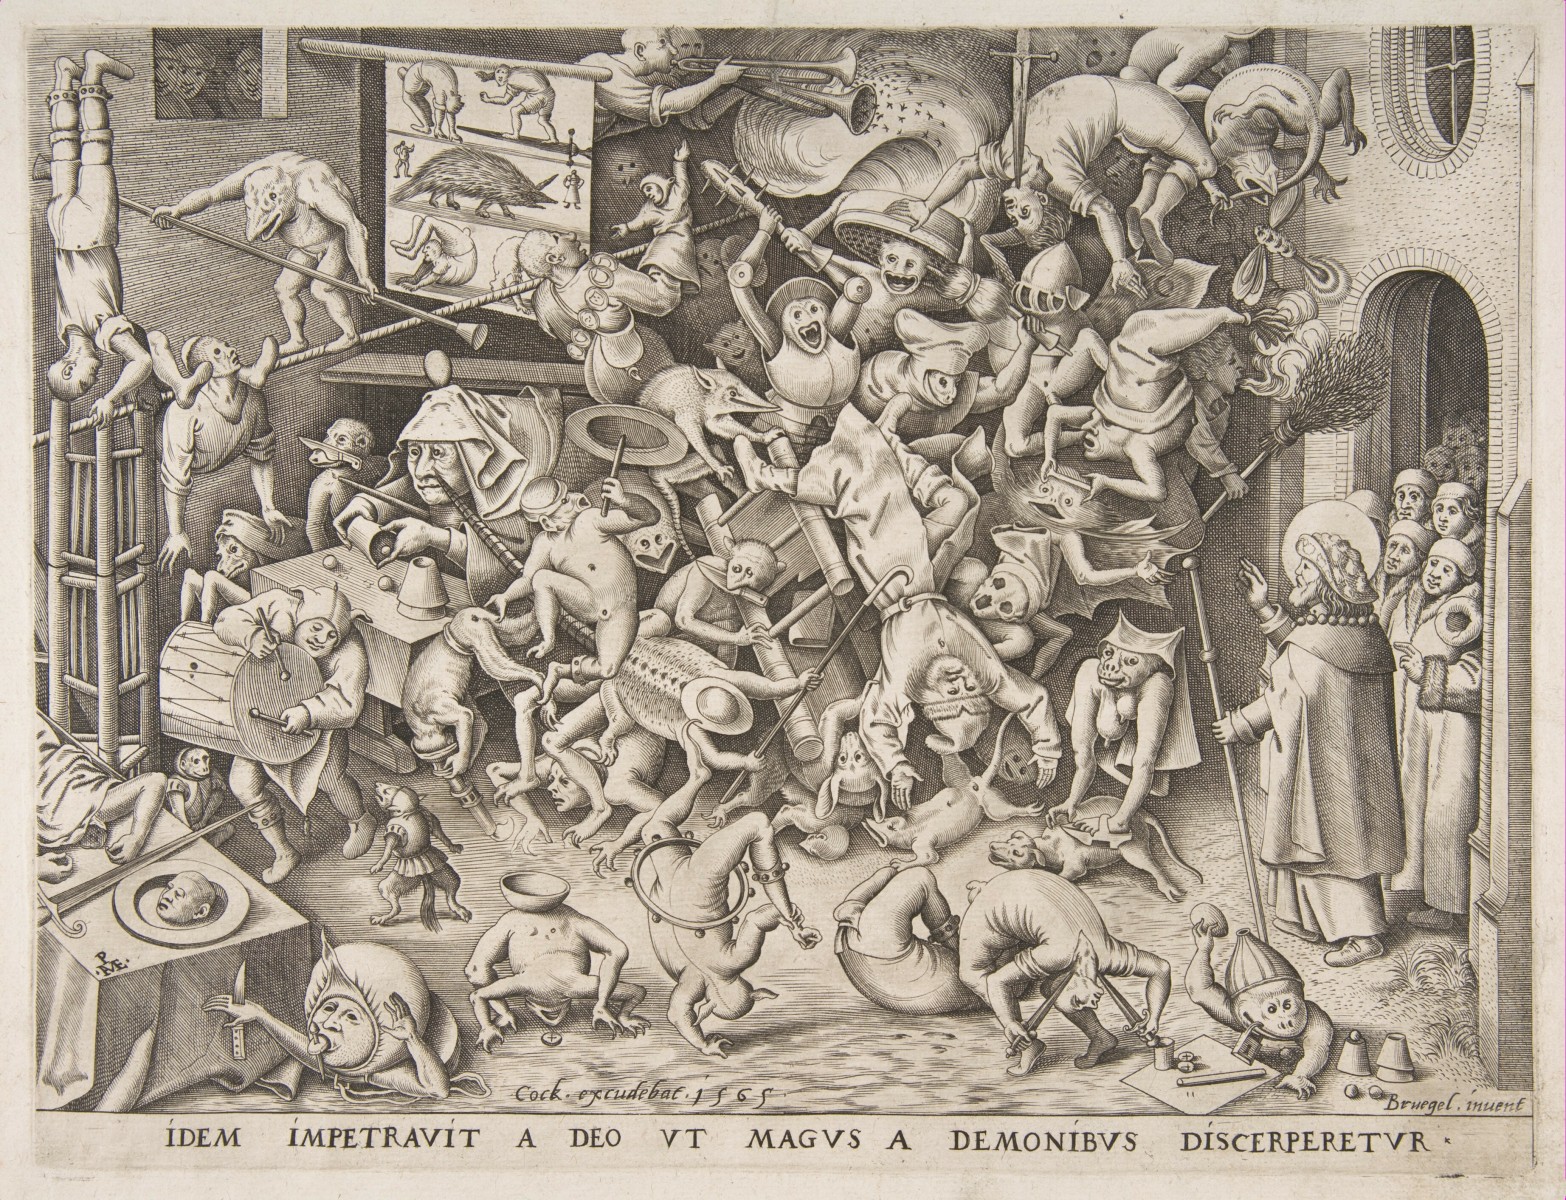 Pieter Bruegel de Oude, De val van de magiër Hermogenes